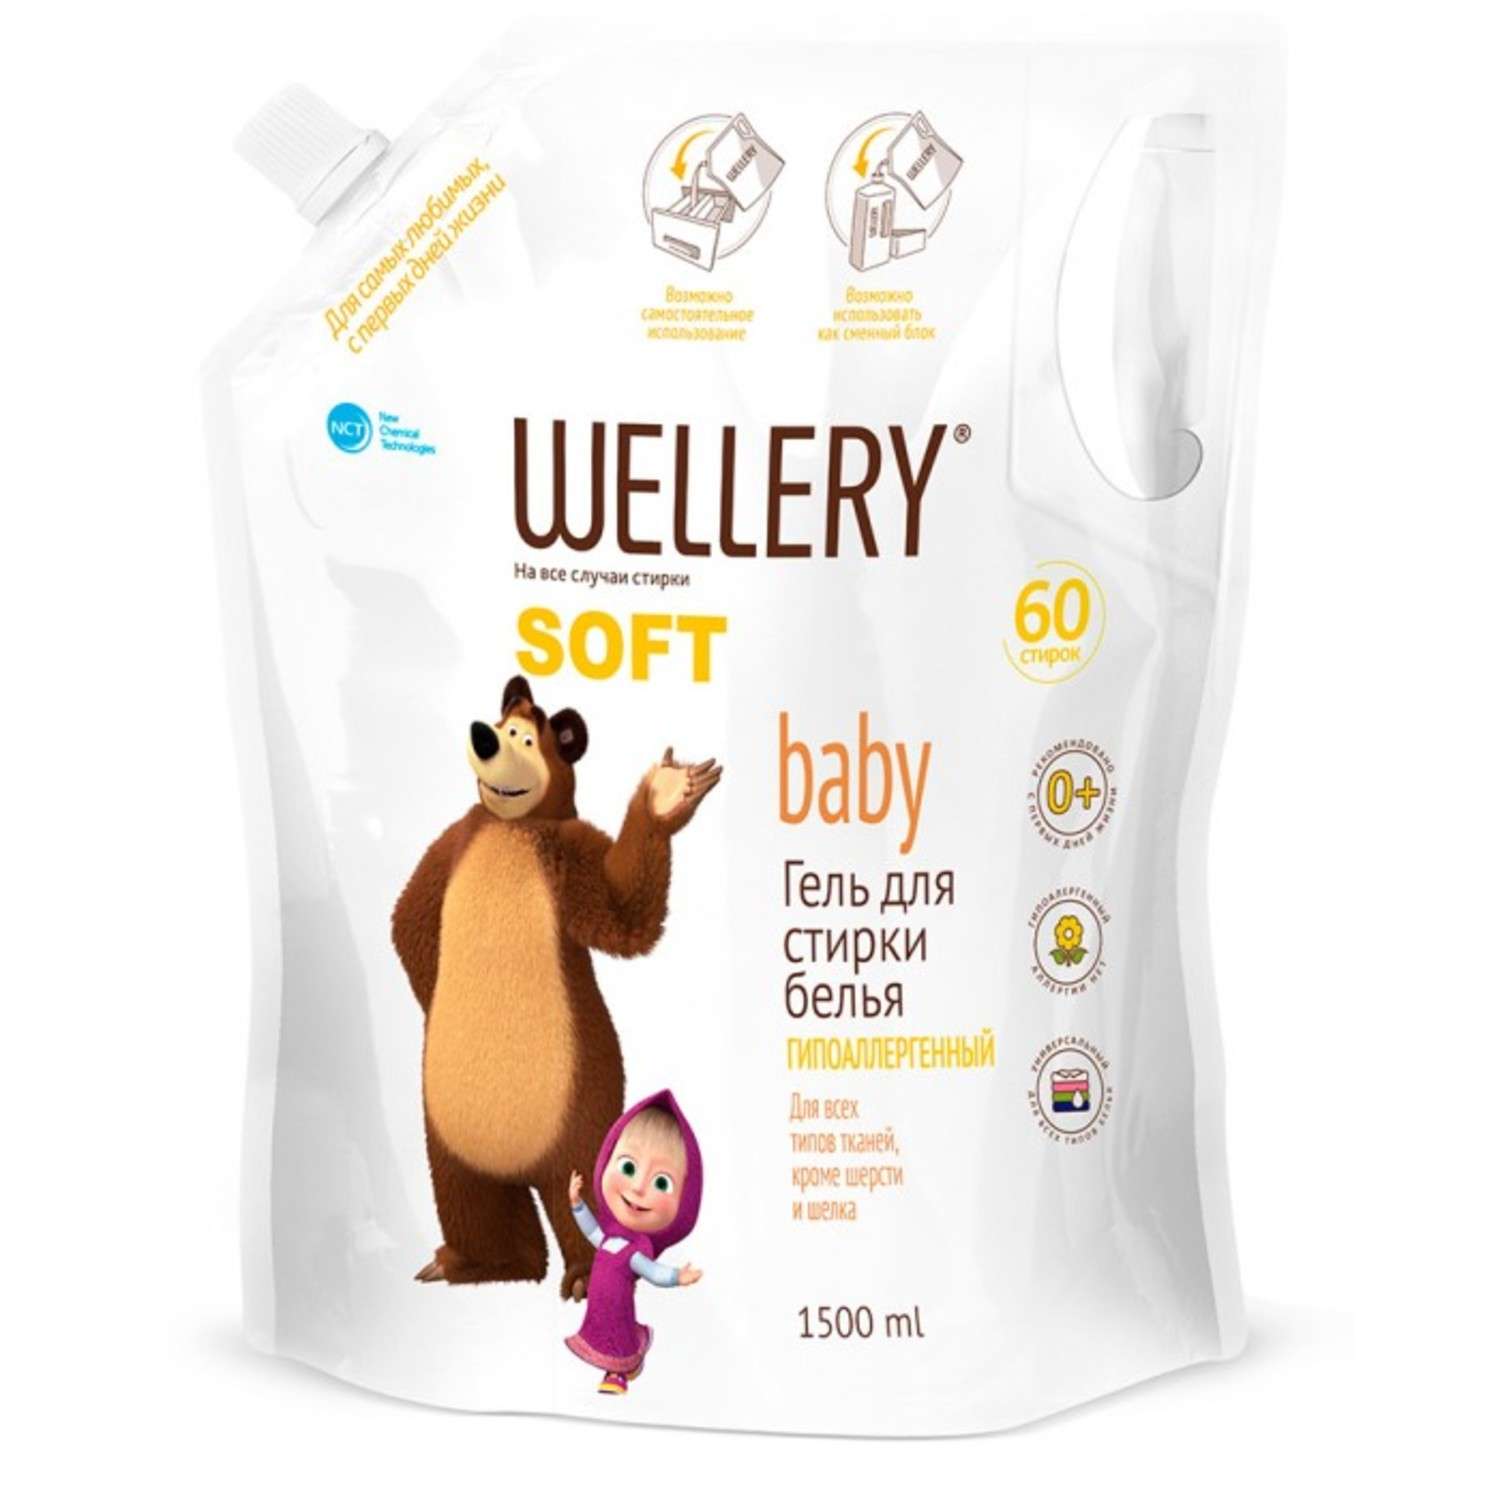 Гель для стирки Wellery детского белья Soft Baby Маша и Медведь гипоаллергенный 1500 л - фото 1